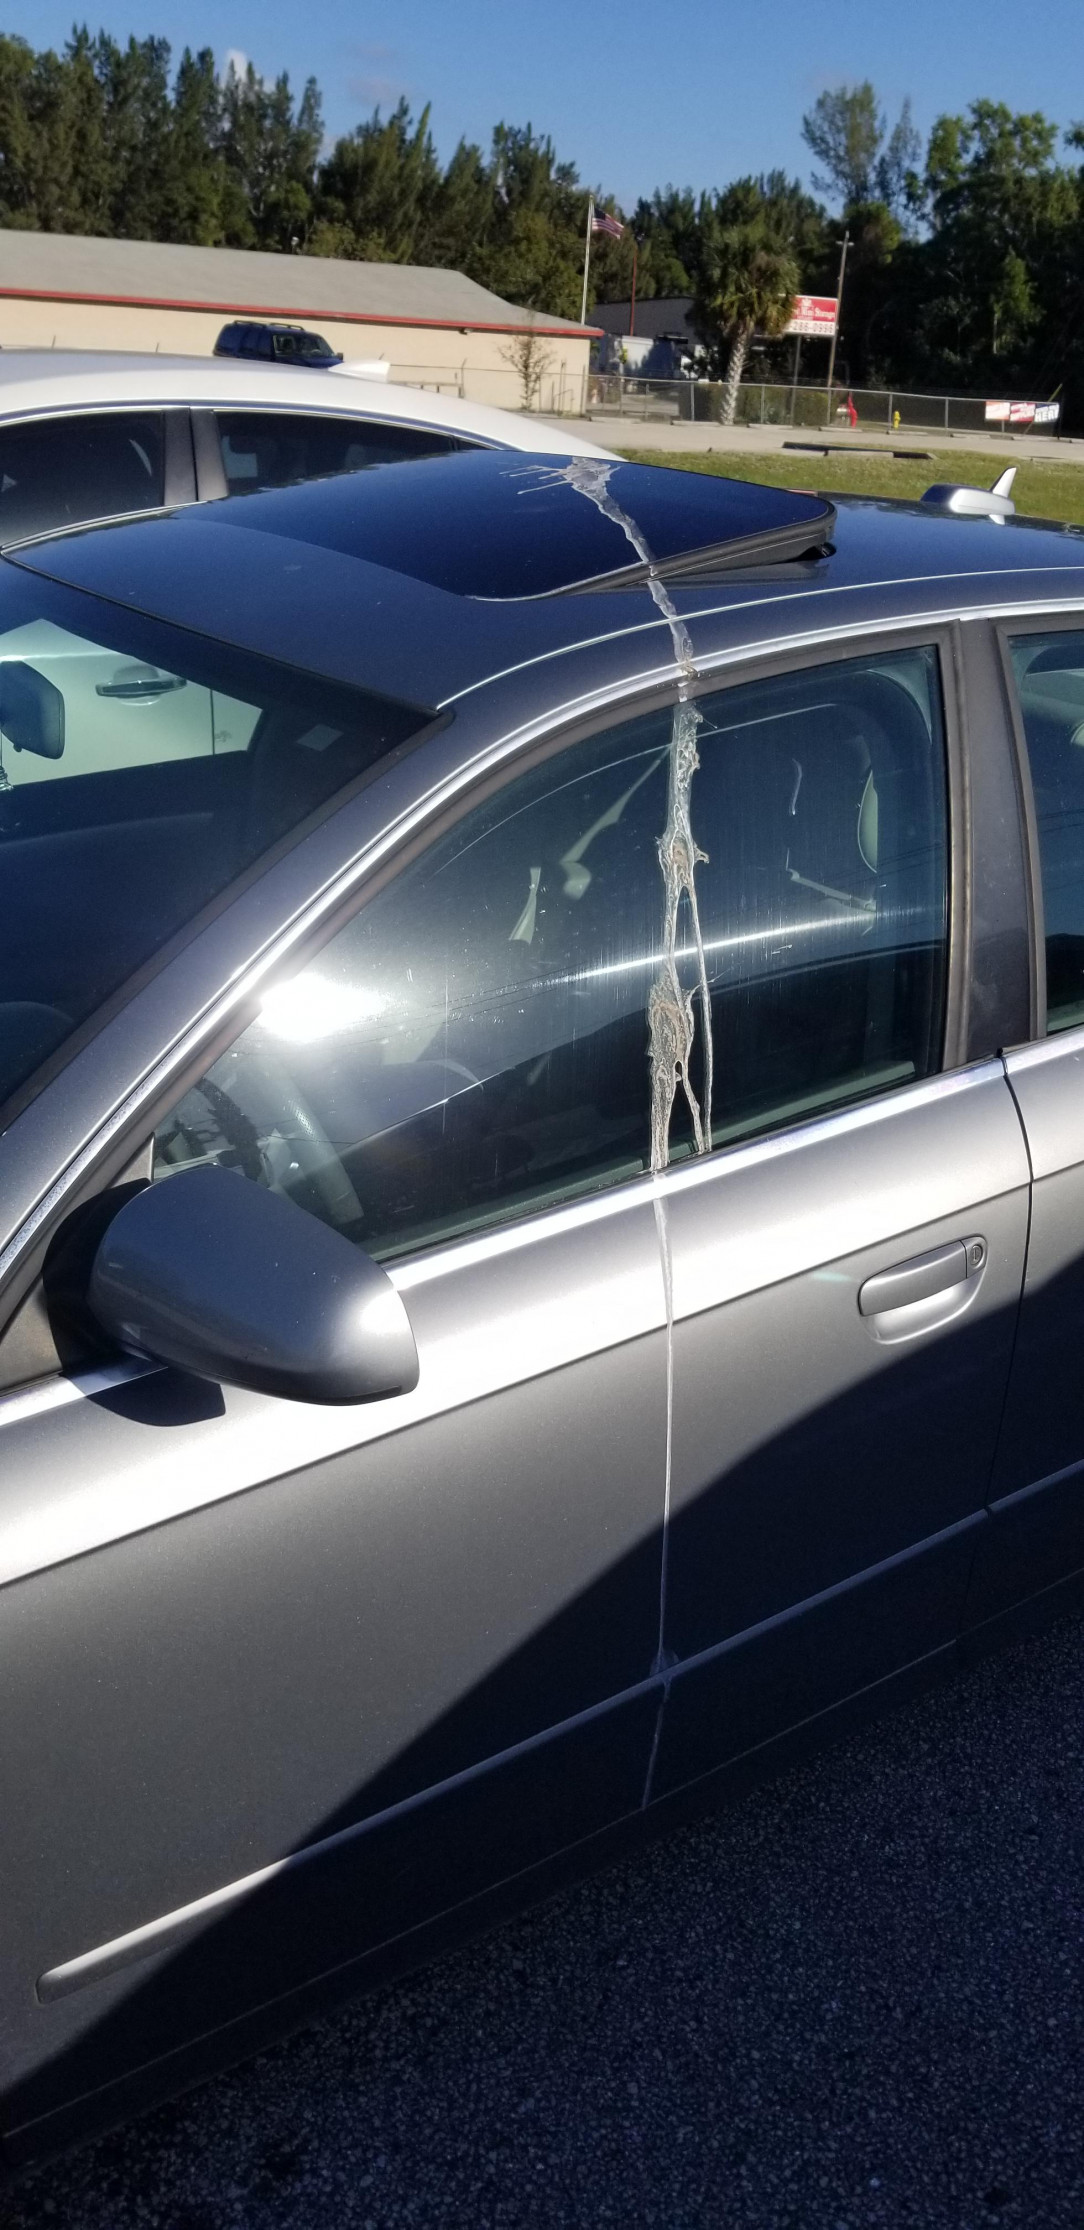 A bird took a whole ass shit on a car at work